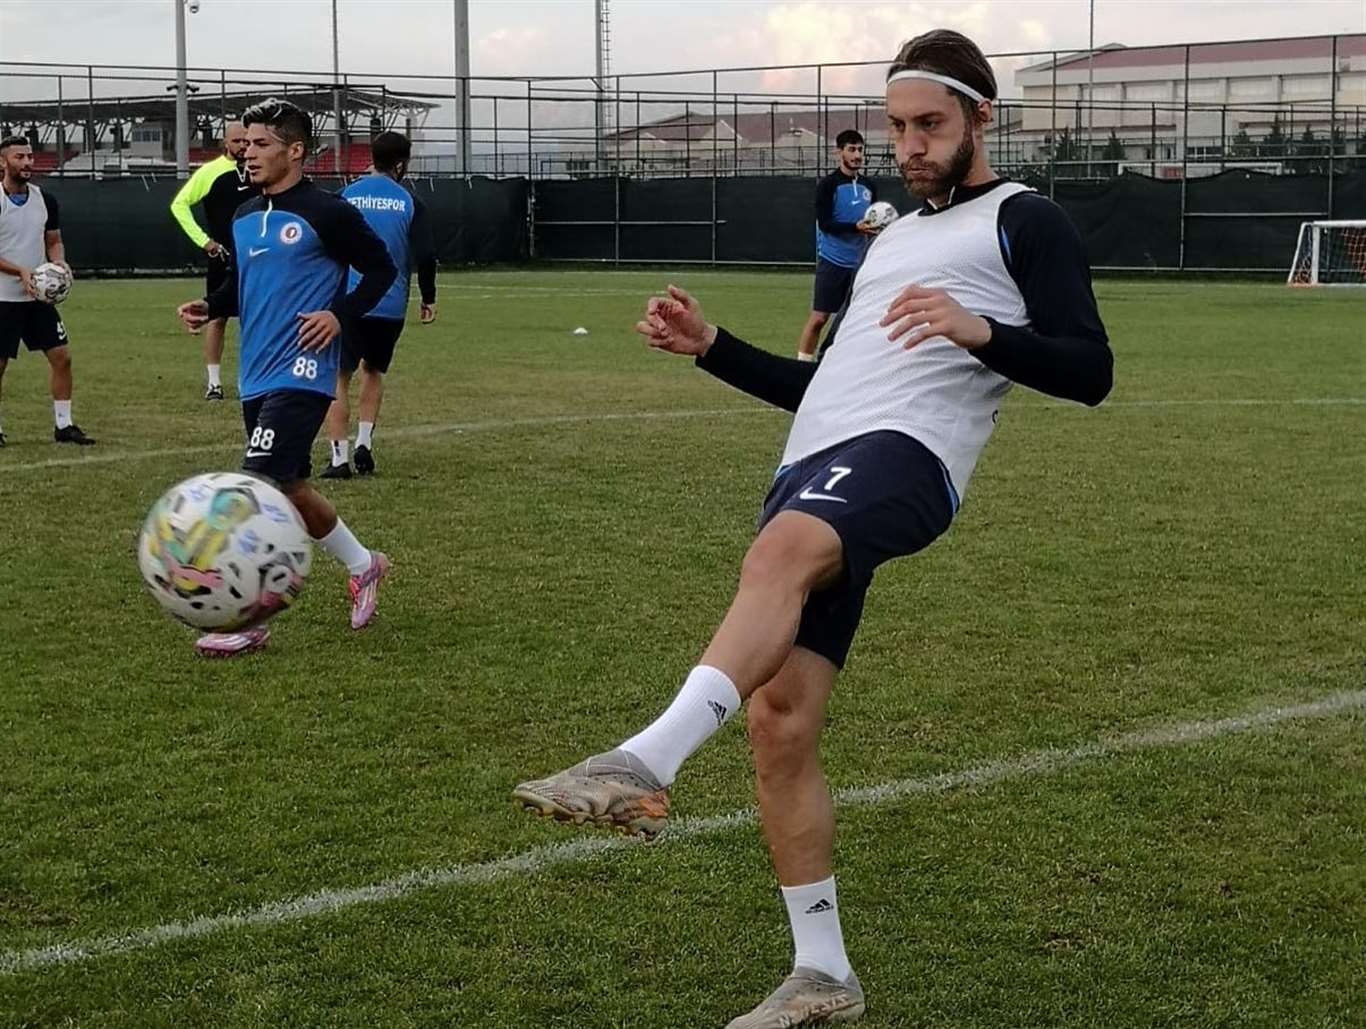    Fethiyespor'un yeni sezon hazırlıkları sürüyor haberi